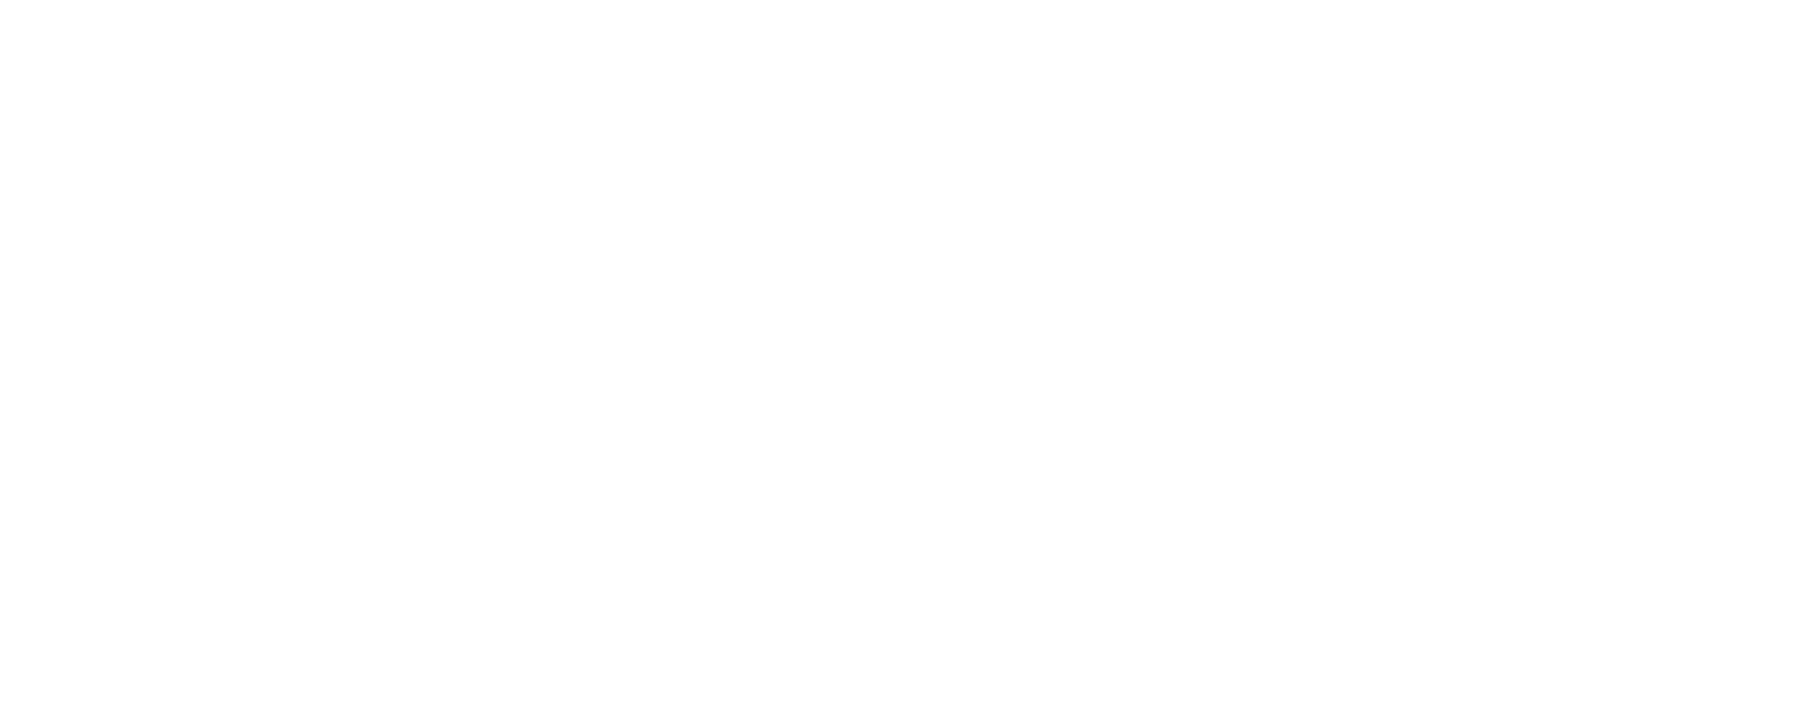 Geography Club logo